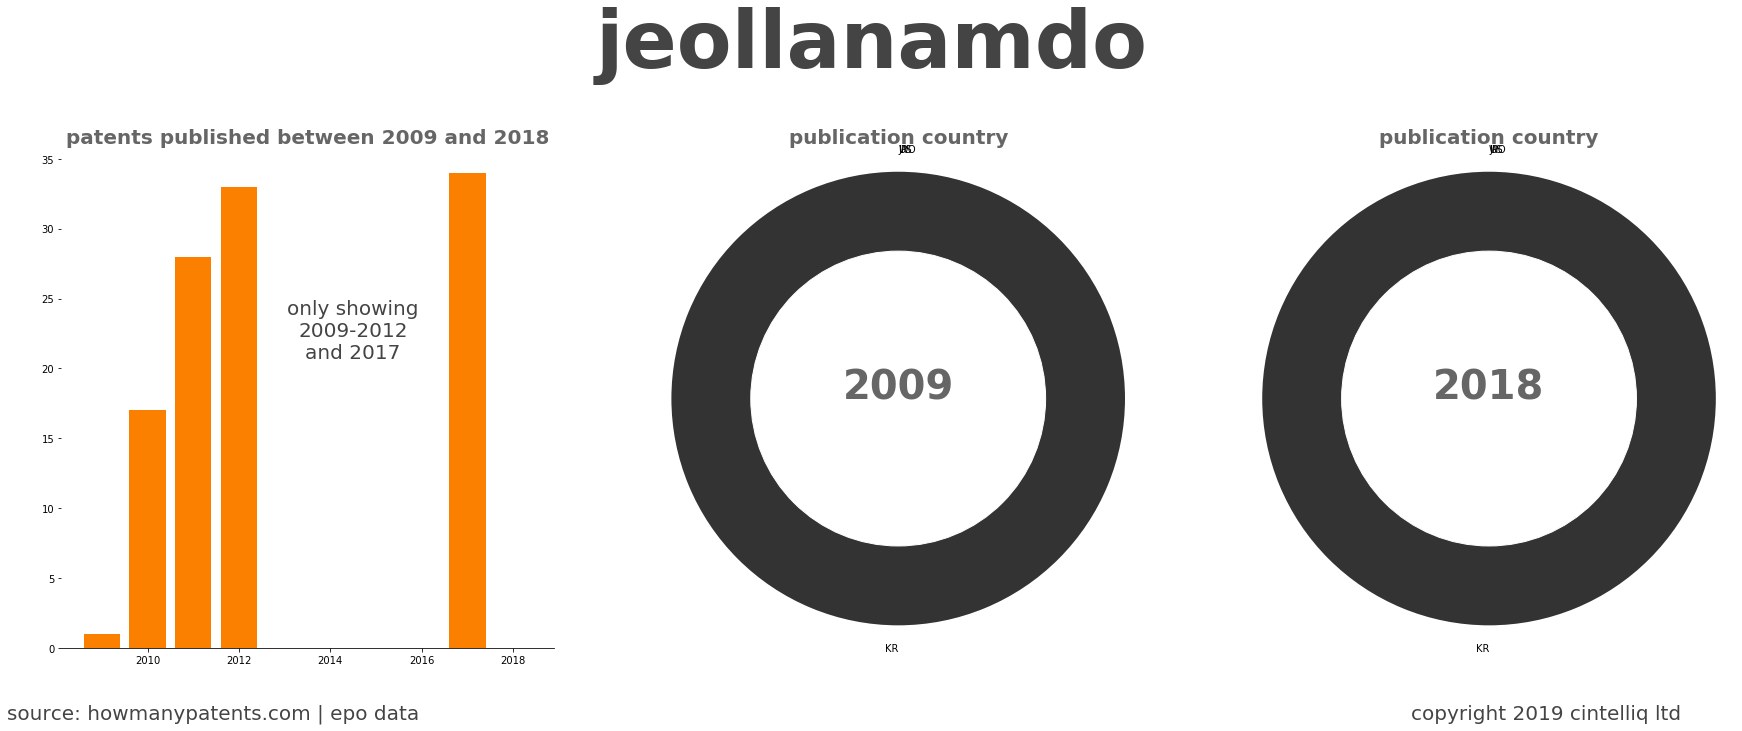 summary of patents for Jeollanamdo